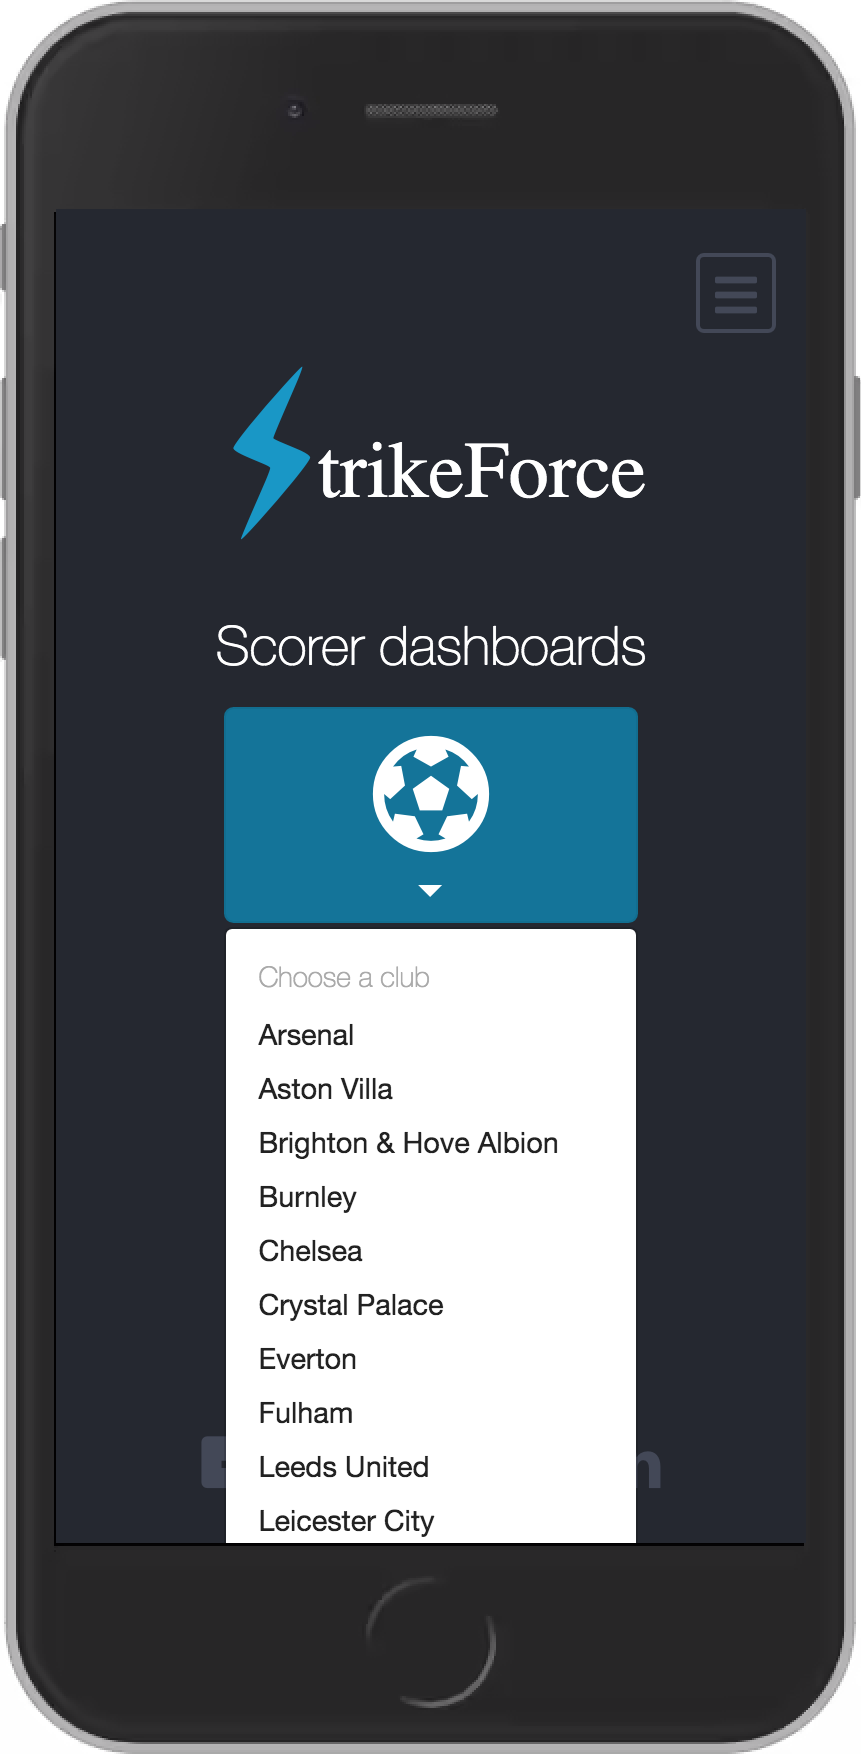 StrikeForce Dashboards page Scorers dropdown menu